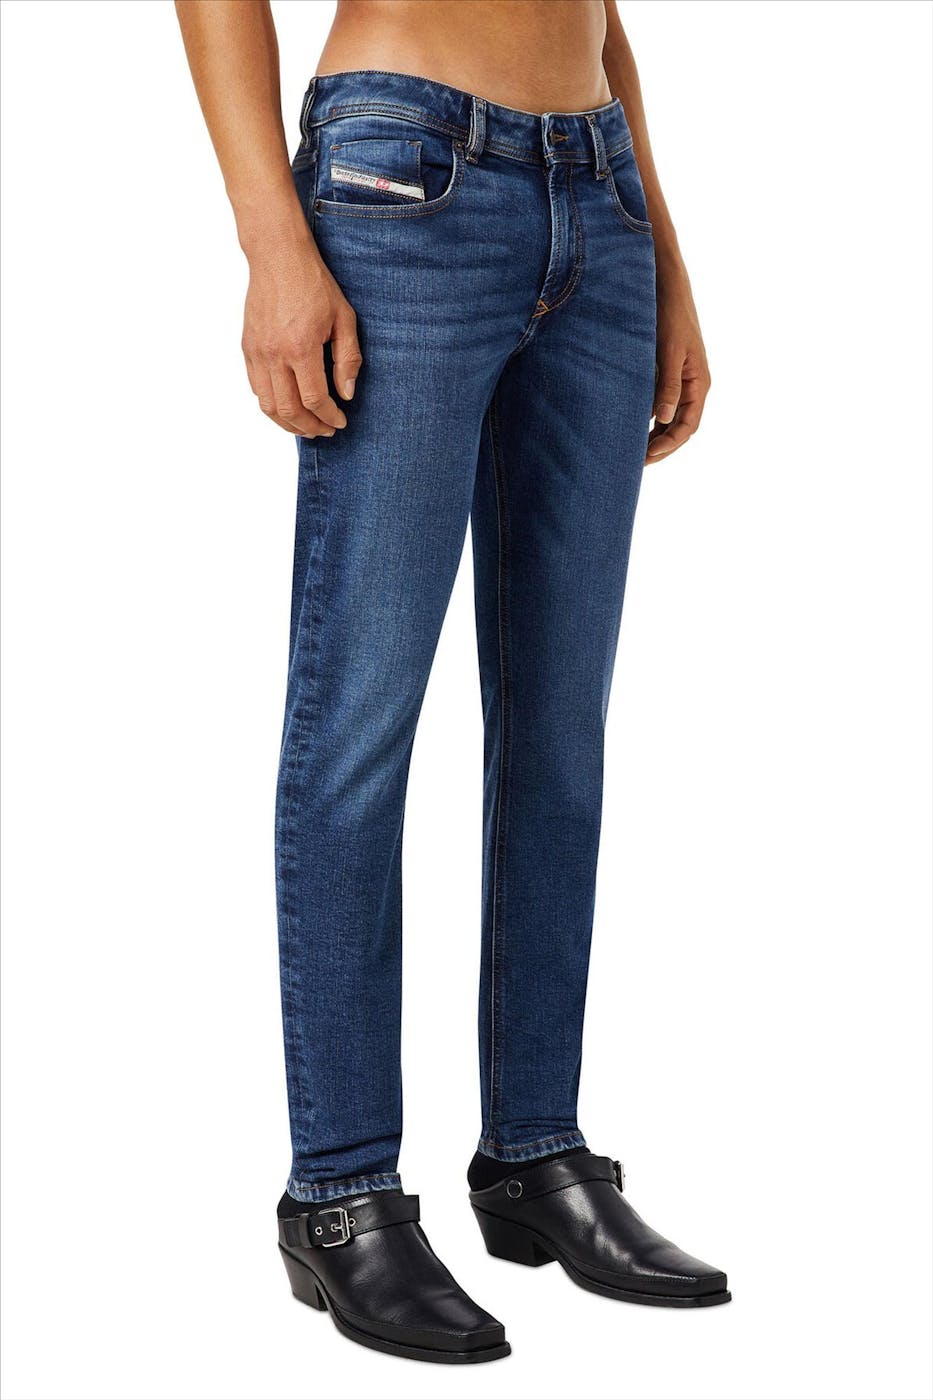 Diesel - Blauwe 1979 (Sleenker) skinny jeans